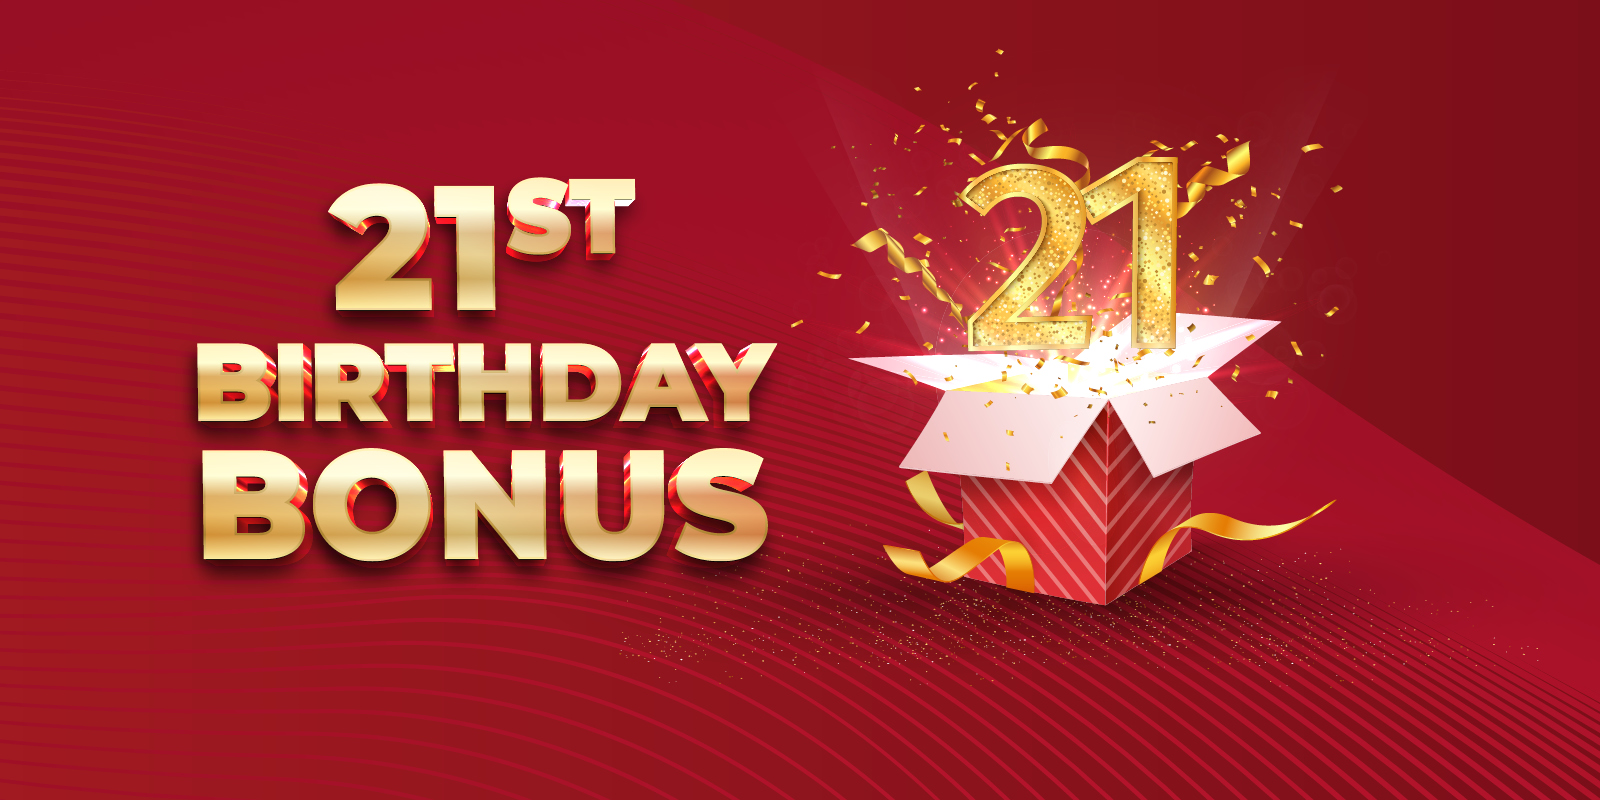 21st birthday bonus sign against red background